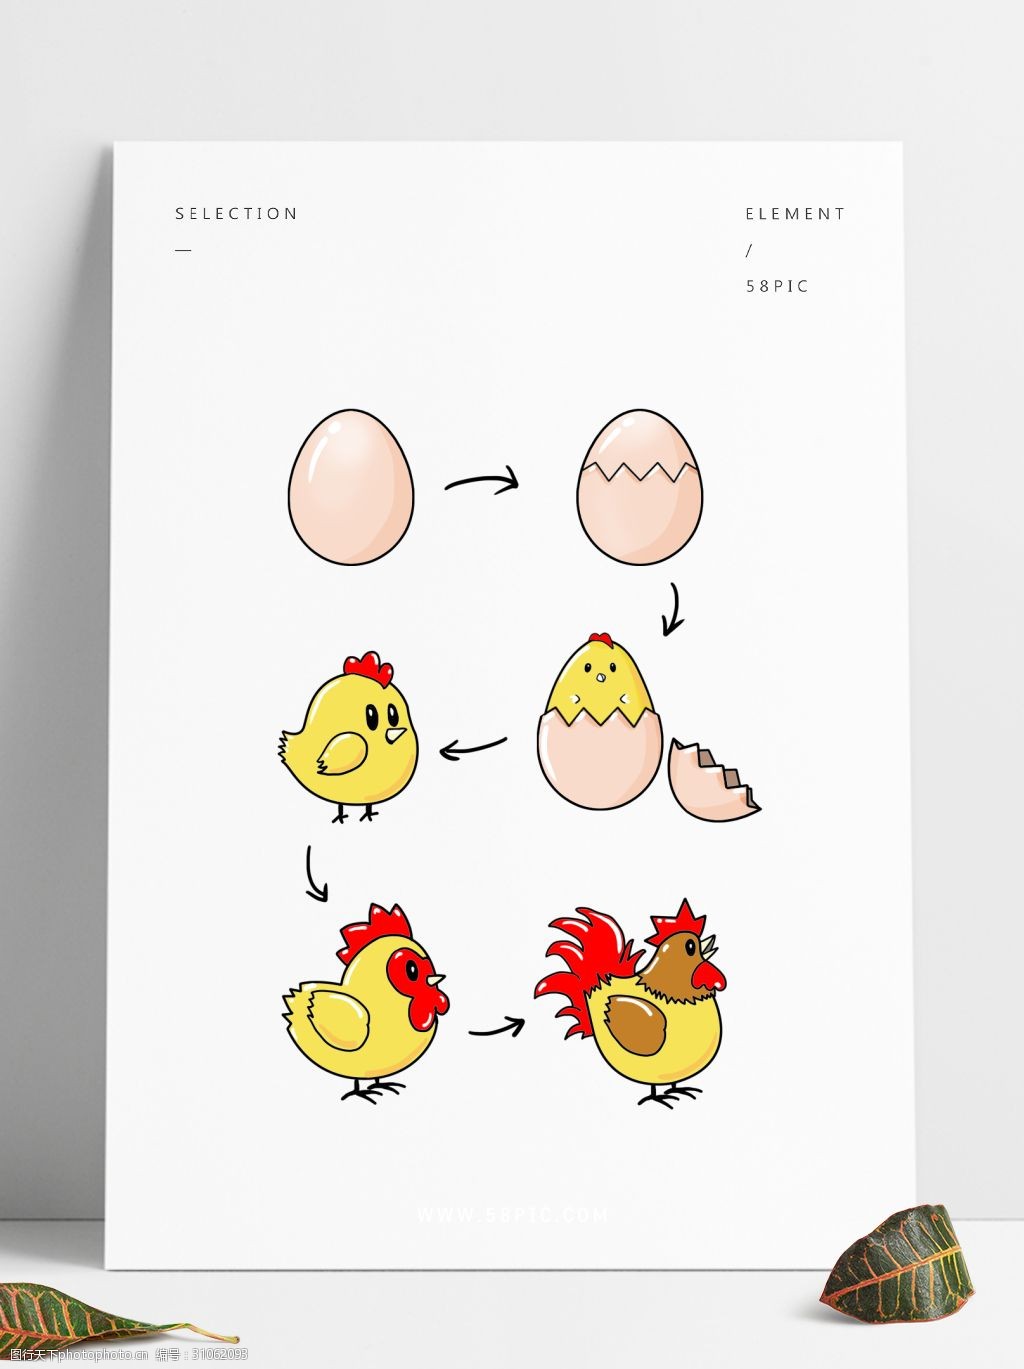 鸡生长过程示意图图片